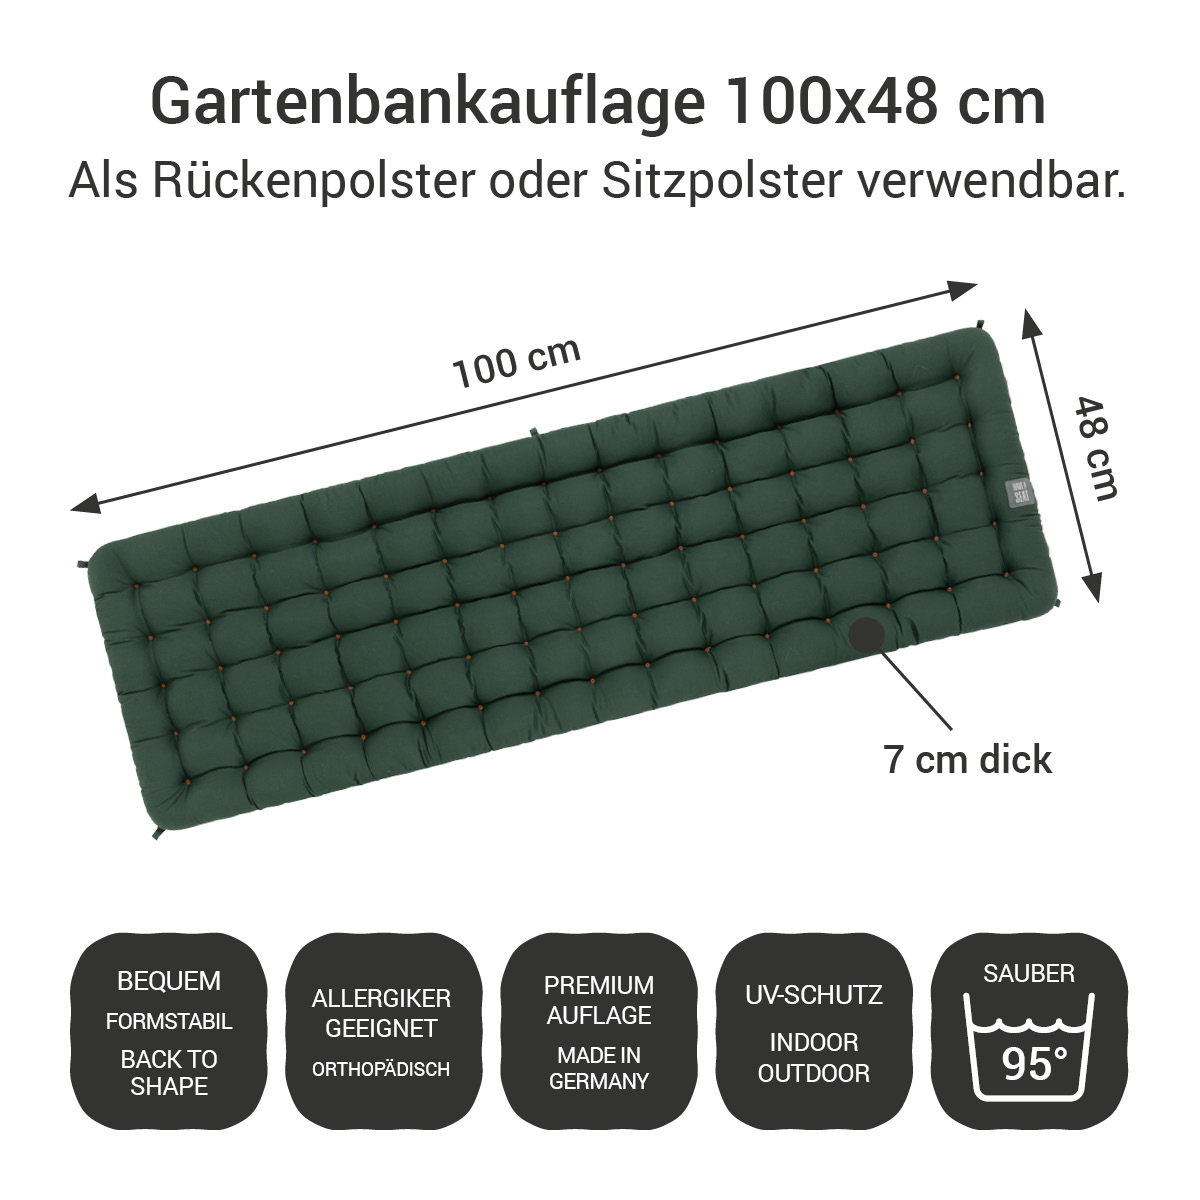 Gartenbankauflage dunkelgrün | 100x48 cm / 100 x 50 cm | bequem & orthopädisch, komplett im Ganzen waschbar bis 95°C, wetterfest, Made in Germany